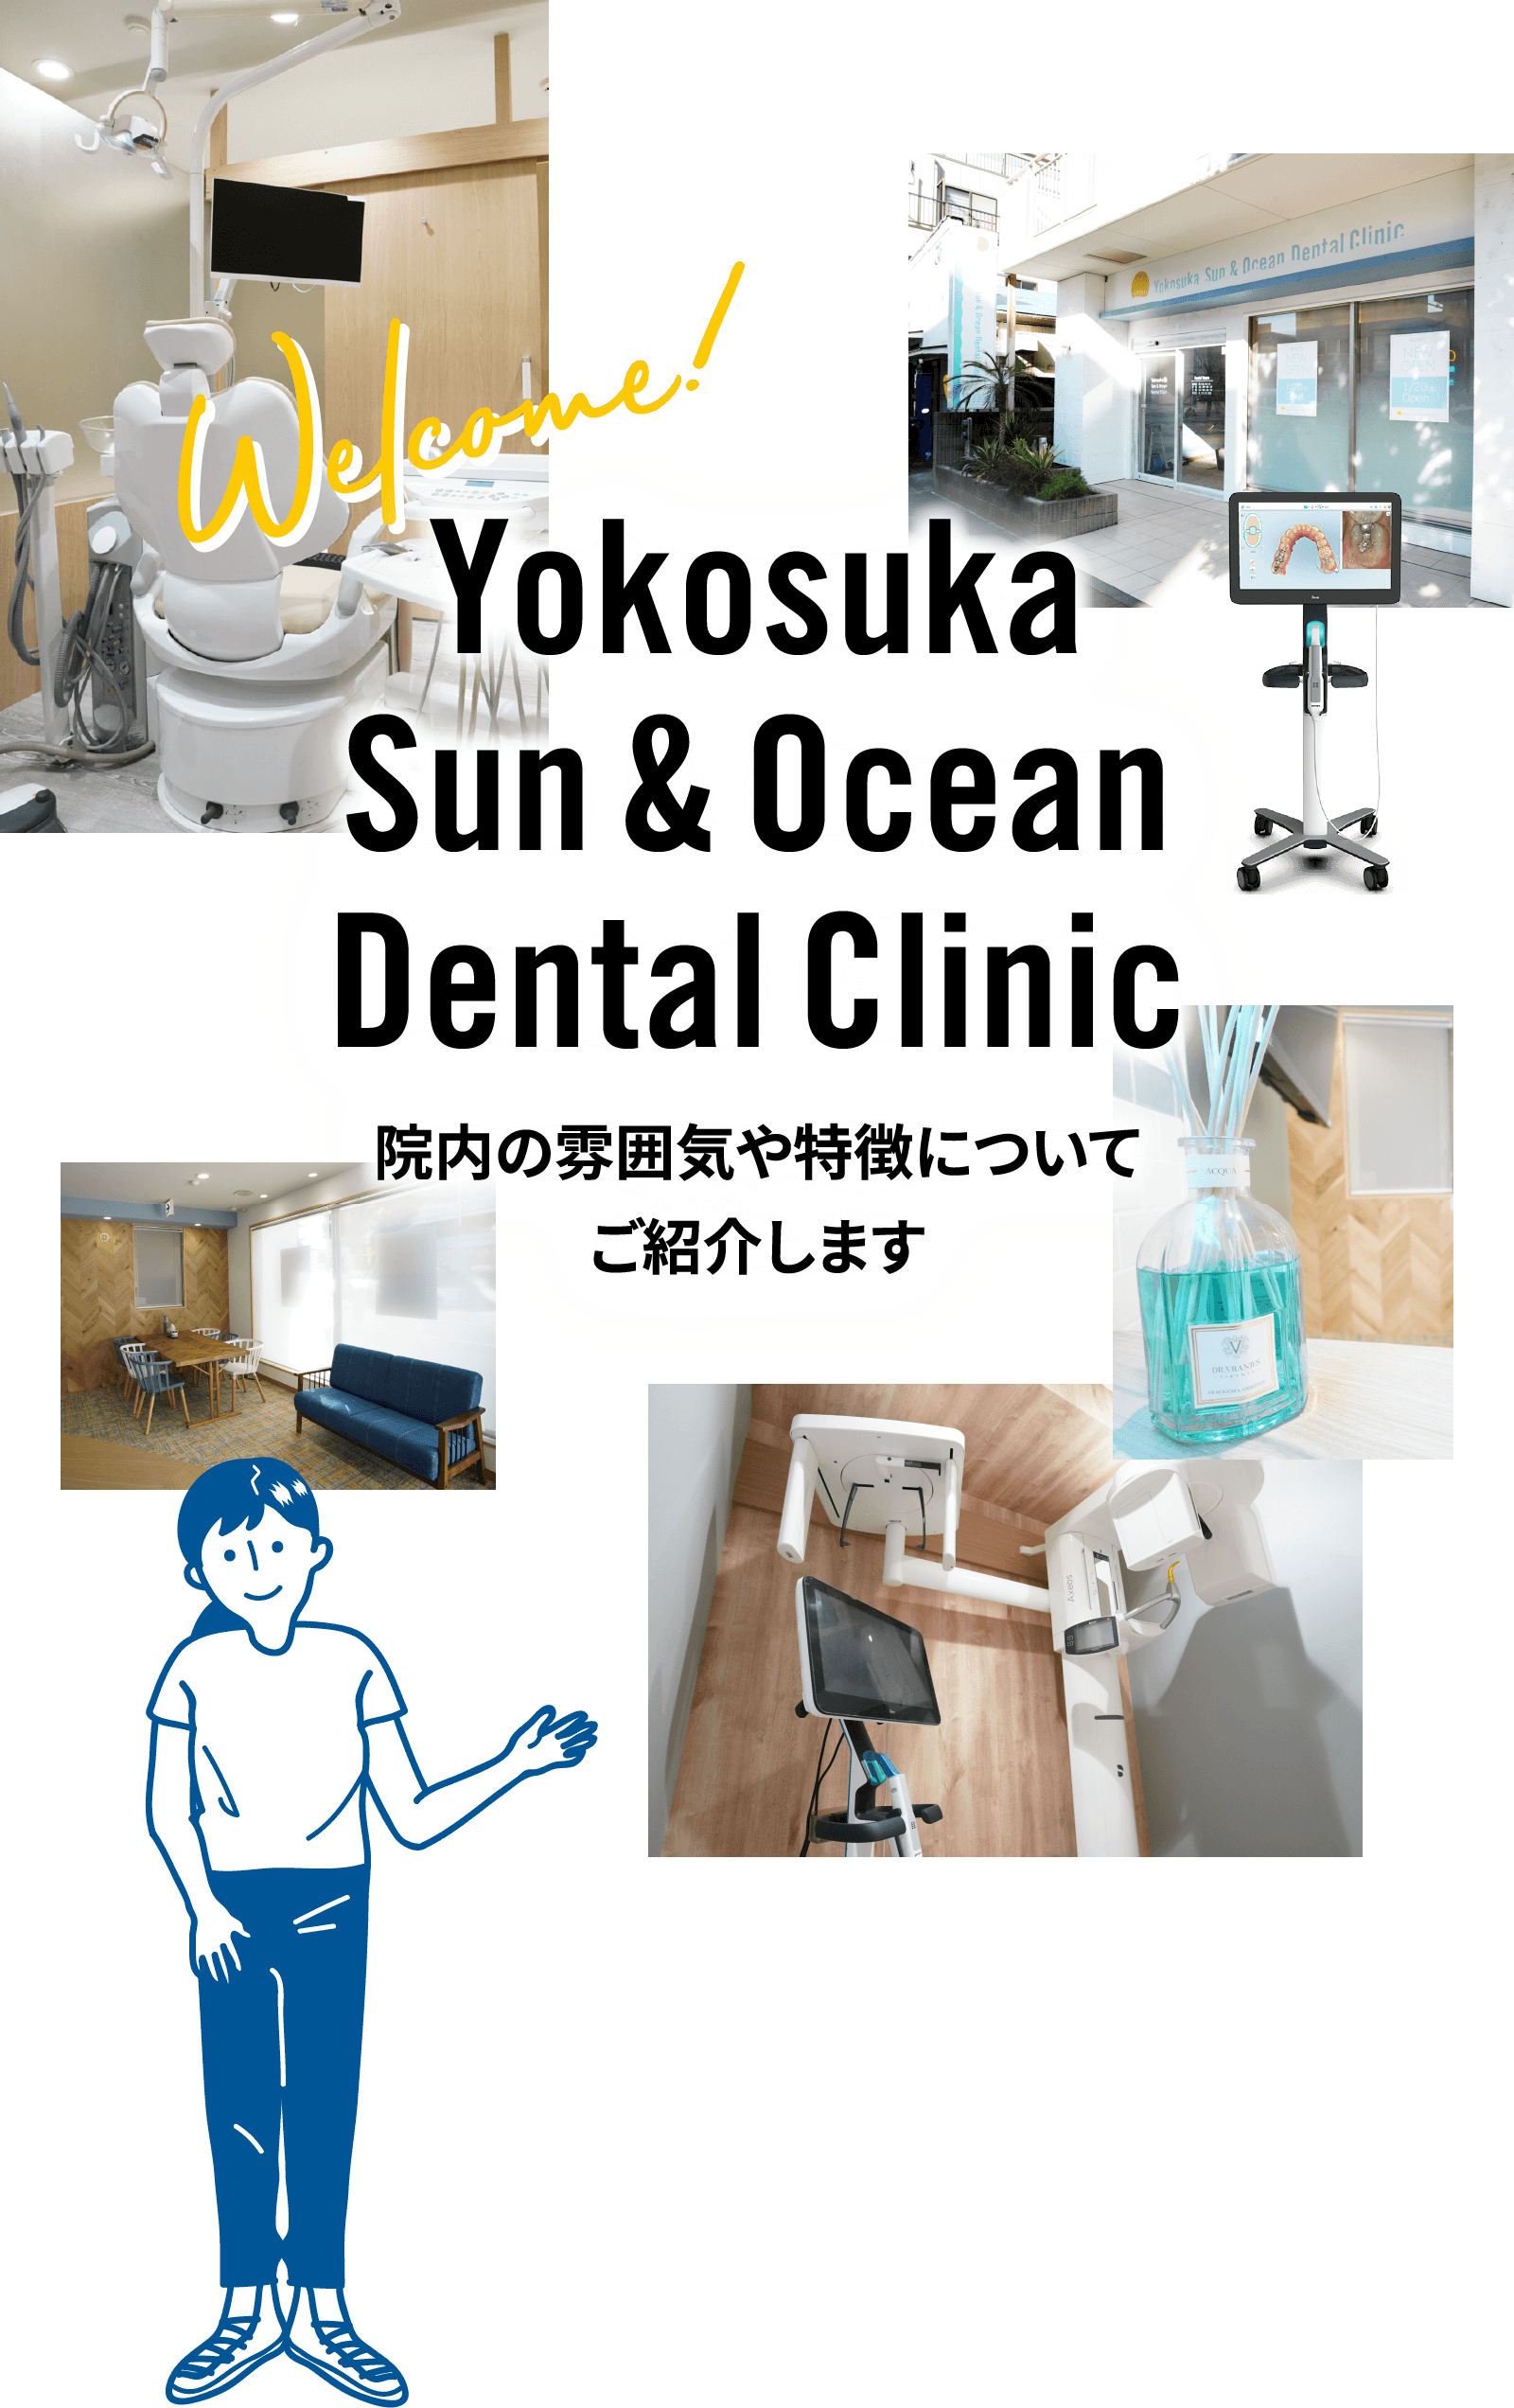 横須賀 Sun & Ocean Dental Clinic 院内の雰囲気や特徴についてご紹介します